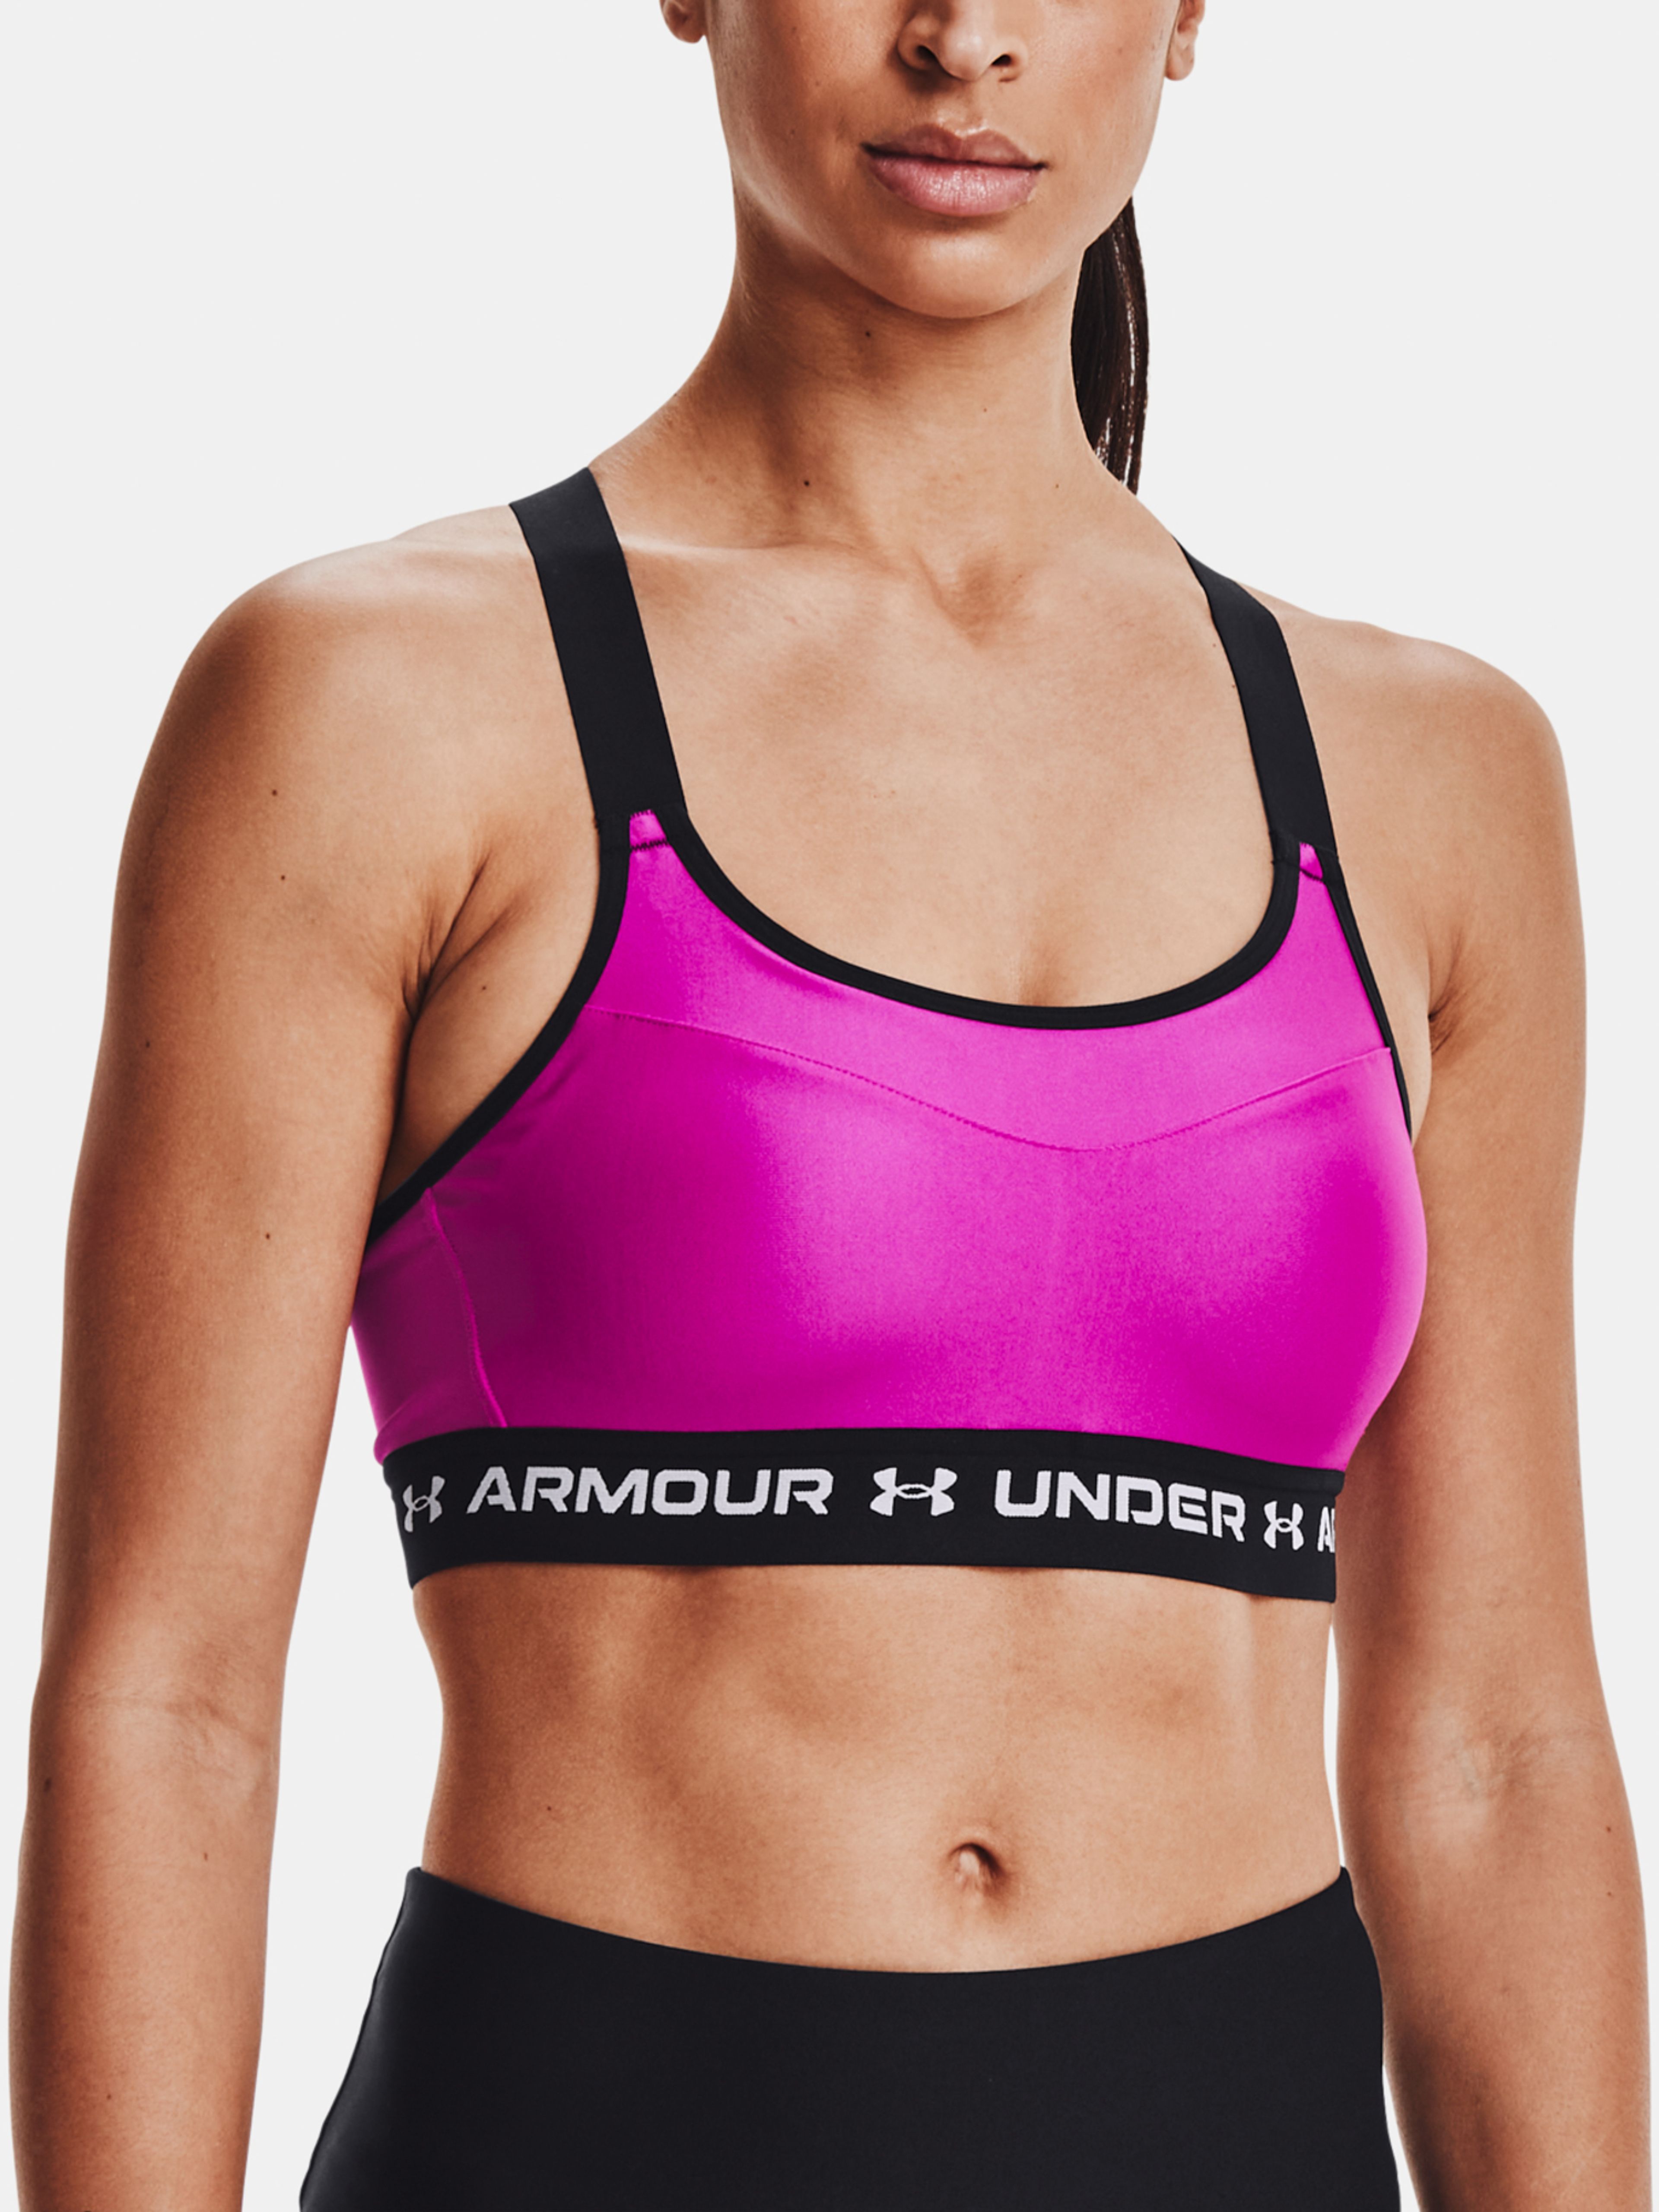  Armour High Crossback Bra, Black - sports bra - UNDER ARMOUR  - 41.63 € - outdoorové oblečení a vybavení shop